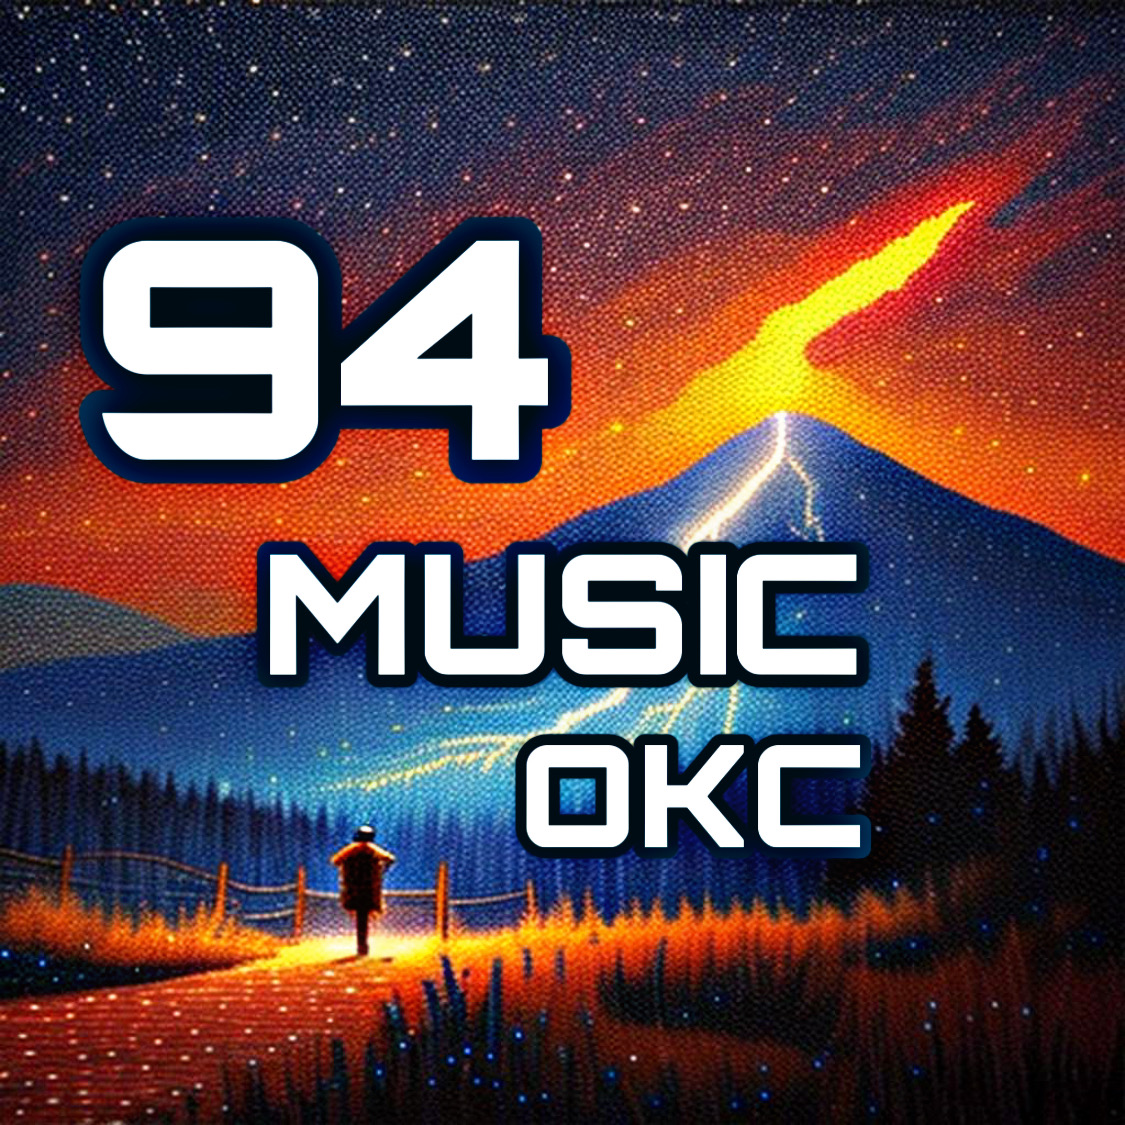 94 Music OKC 